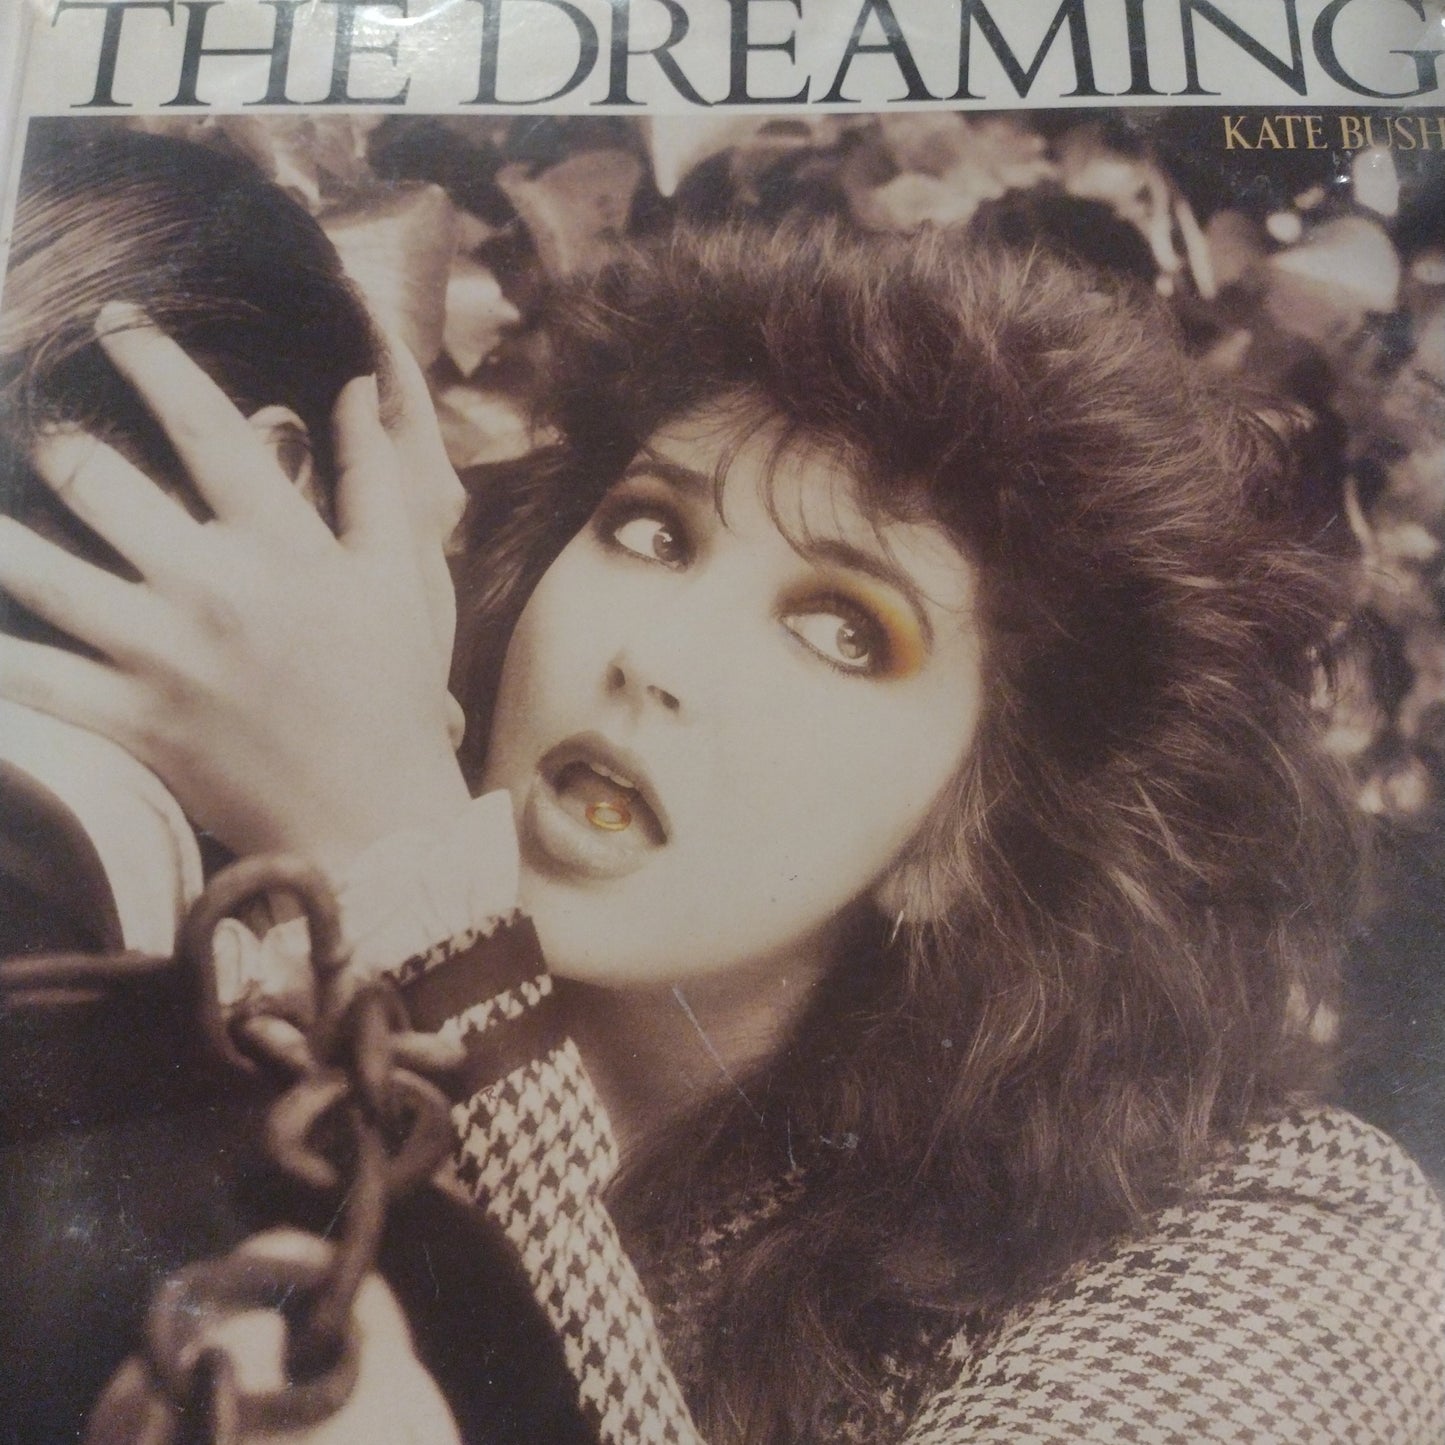 The dreaming Kate Bush LP